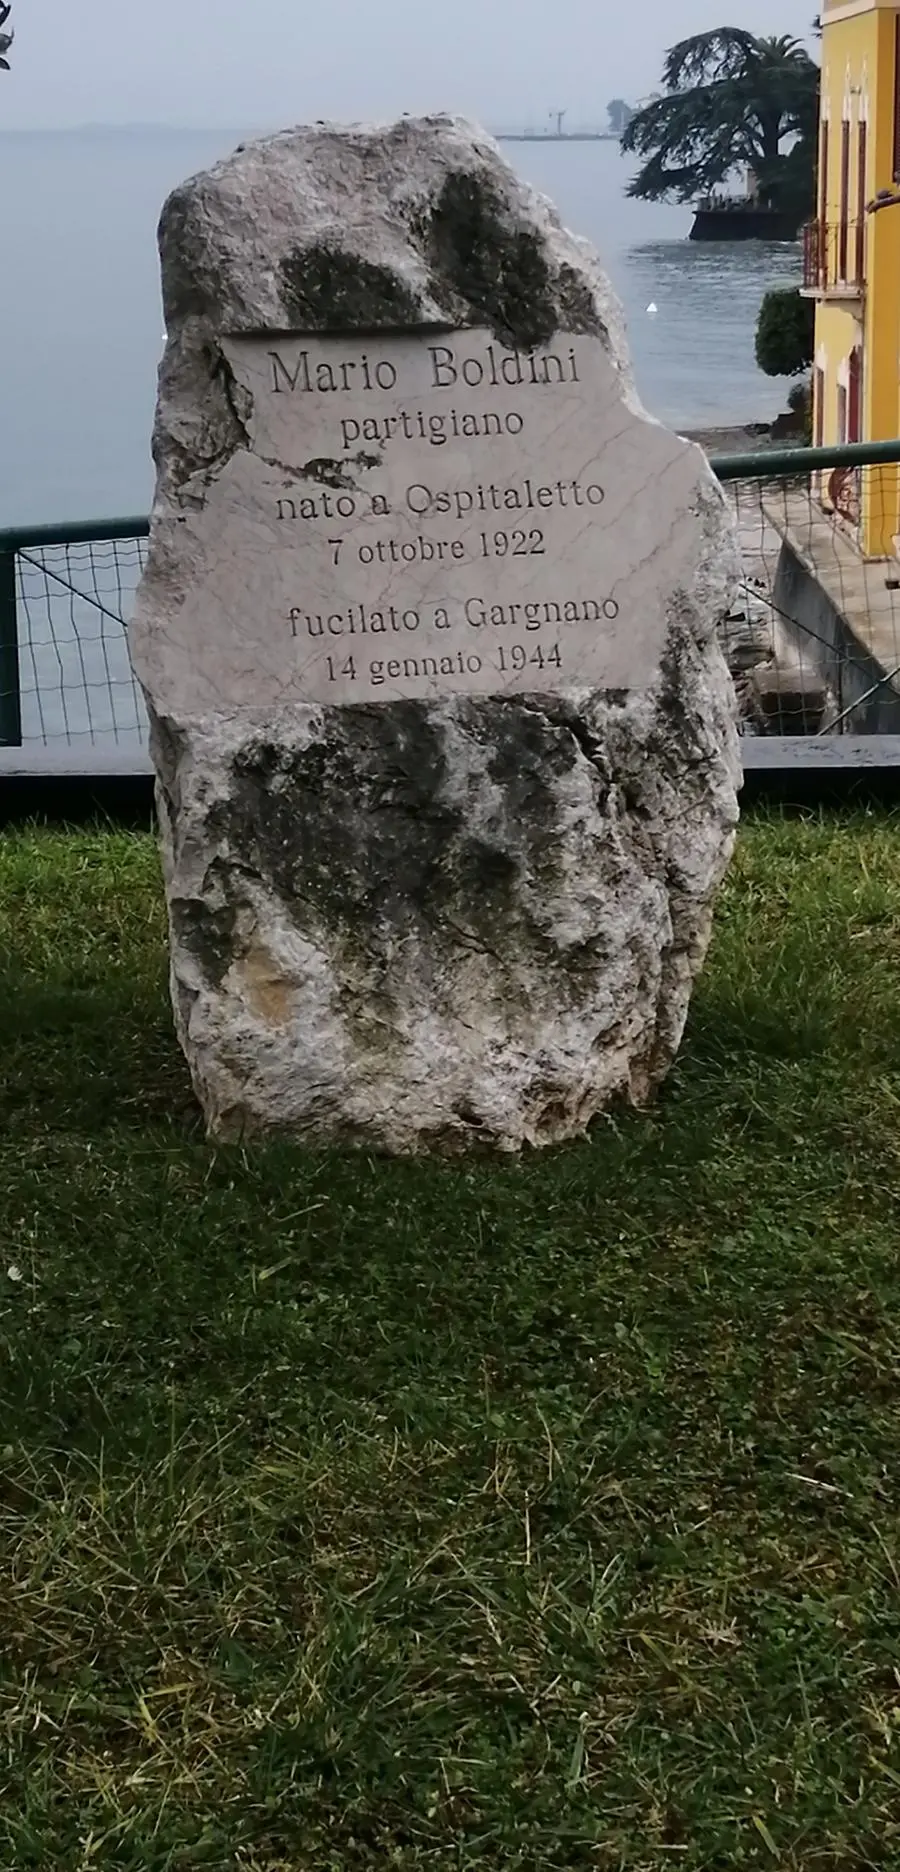 La cerimonia in memoria del partigiano Boldini